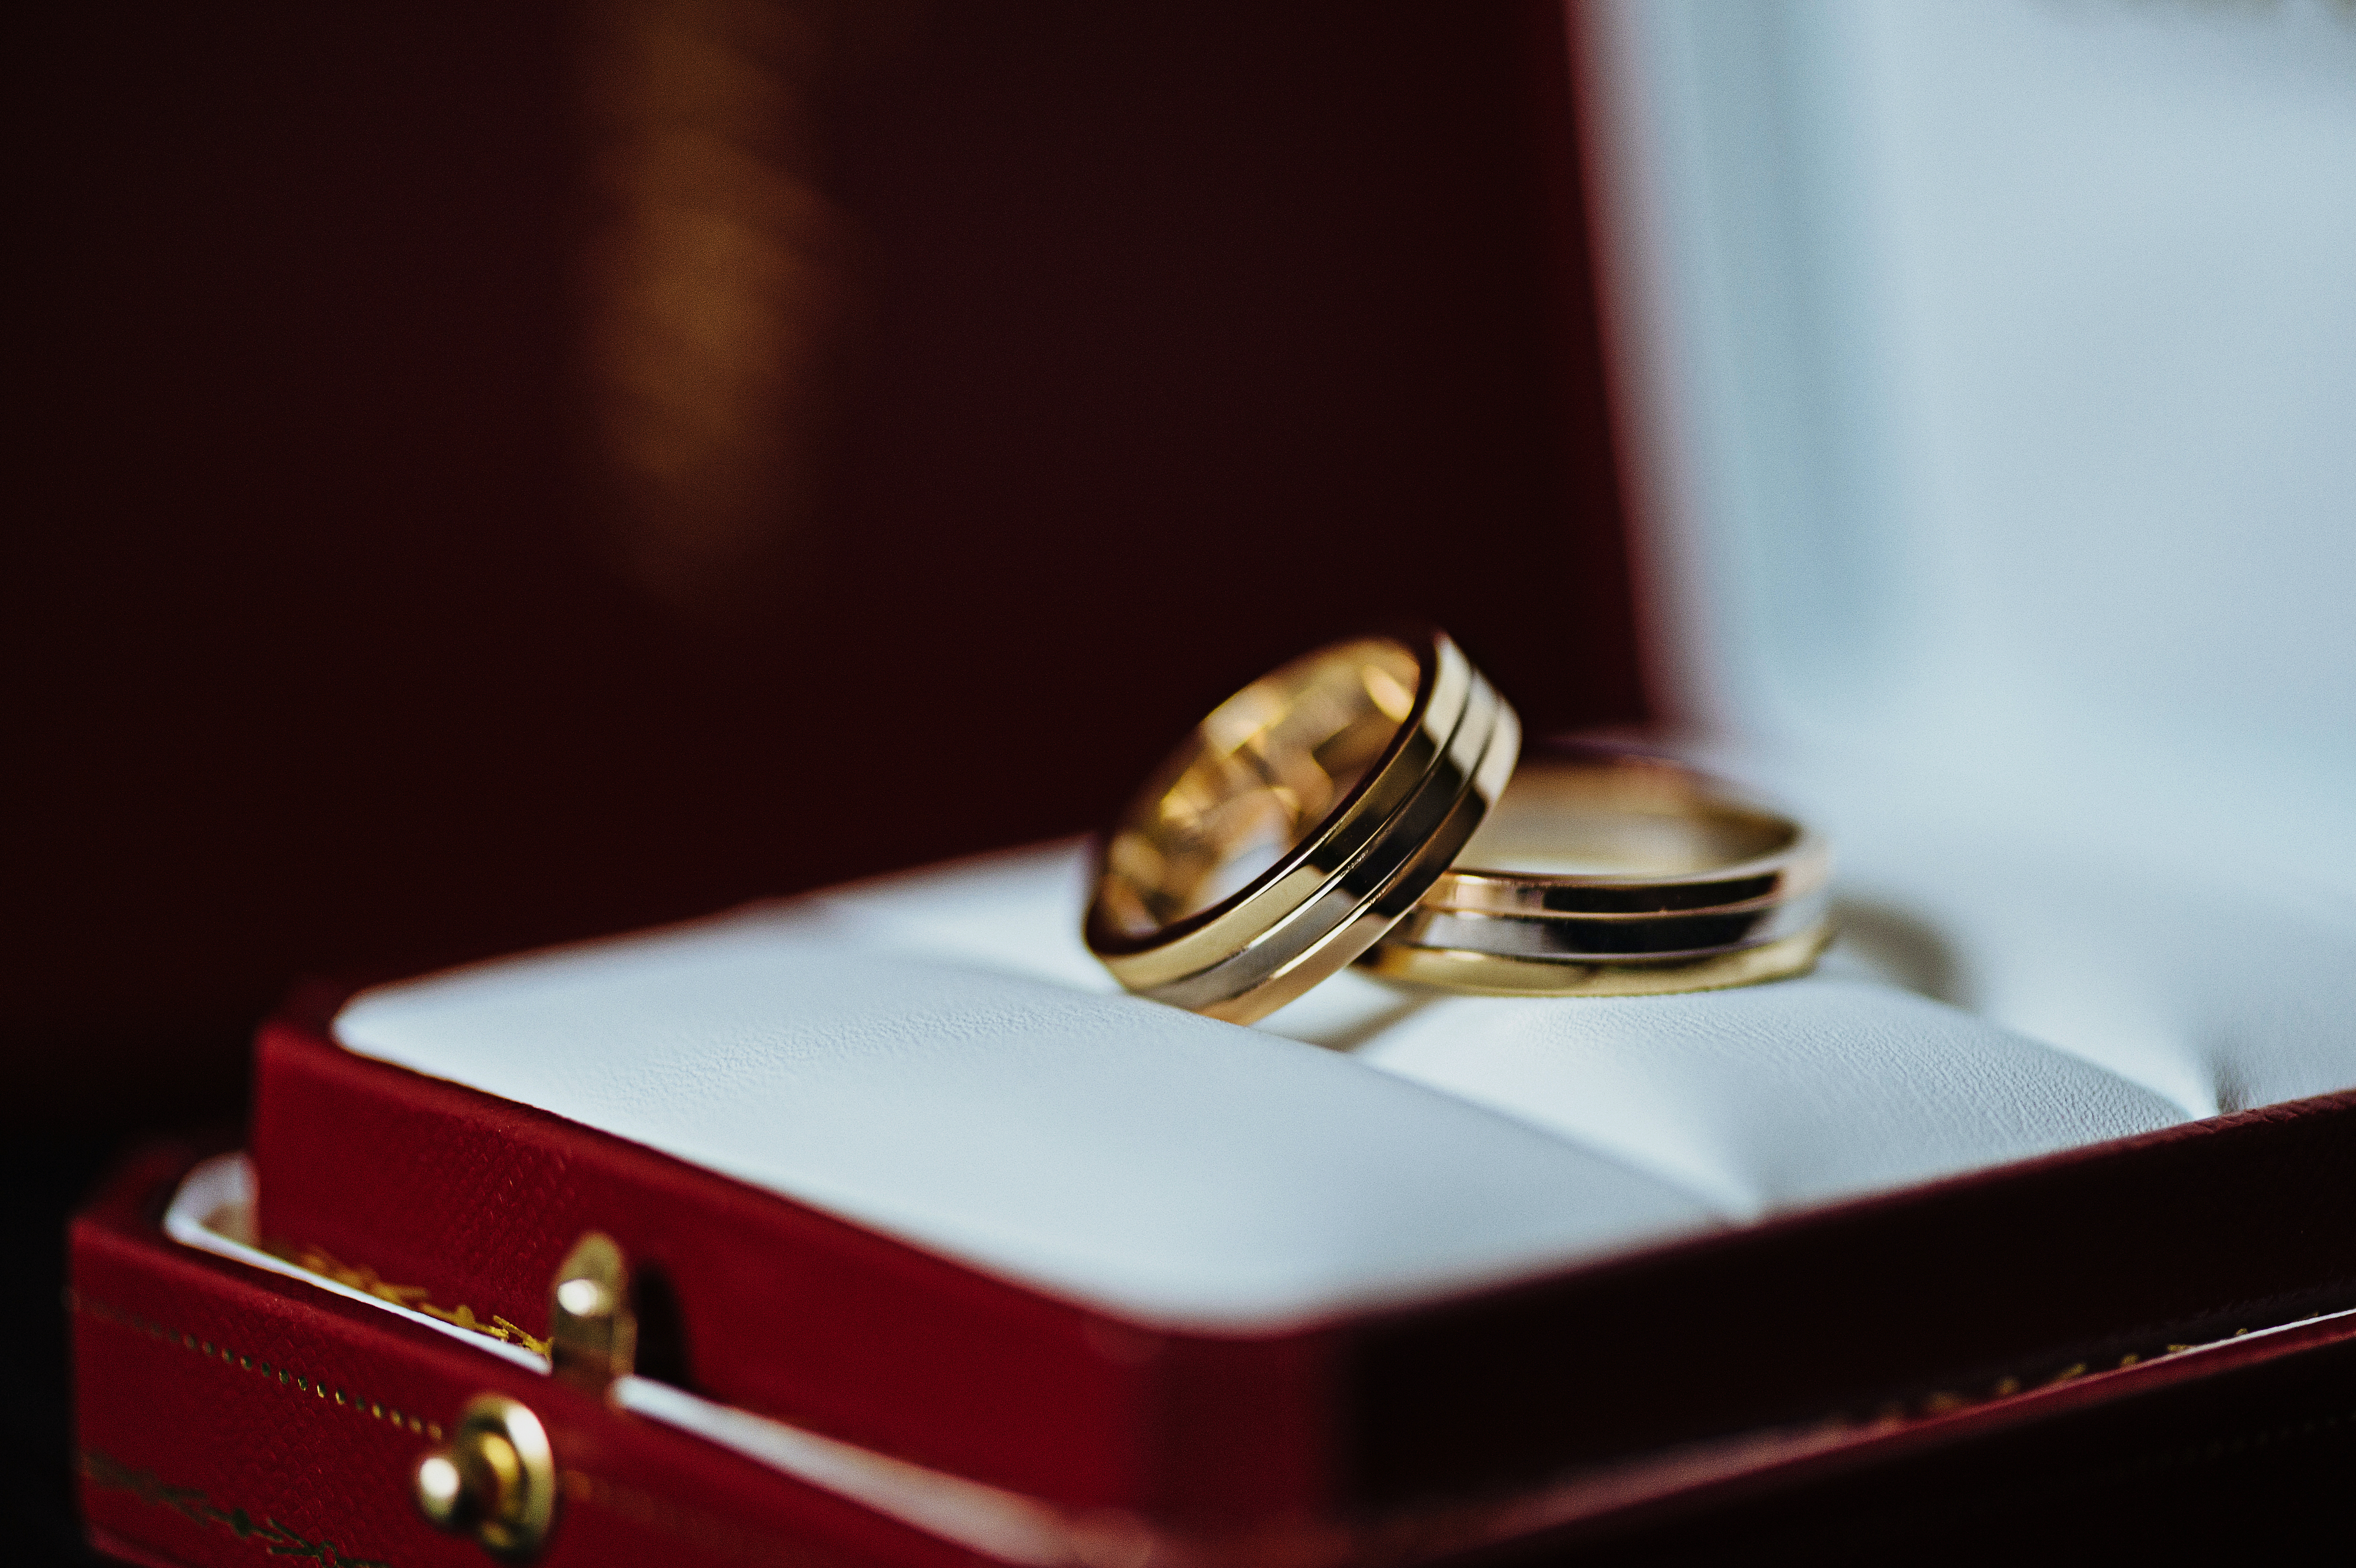 カルティエの結婚指輪 おすすめコレクション8選と素材選び